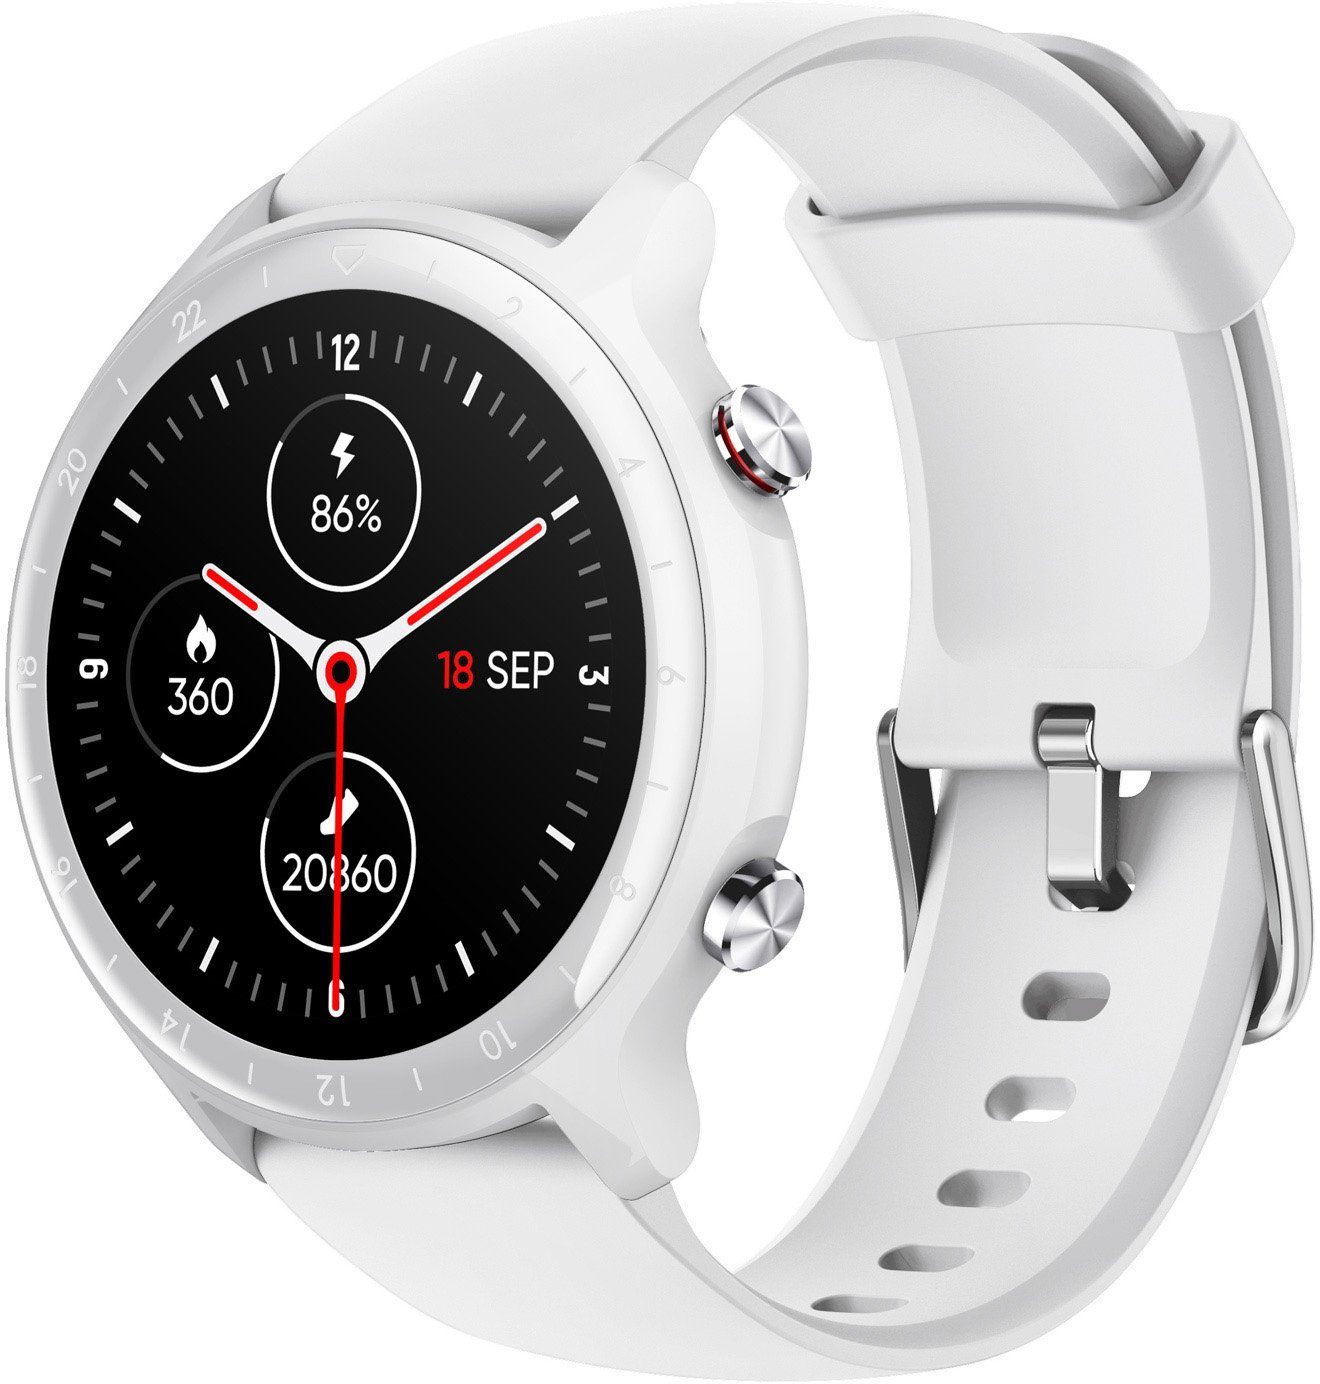 SMARTY 2.0 SW031B Smartwatch